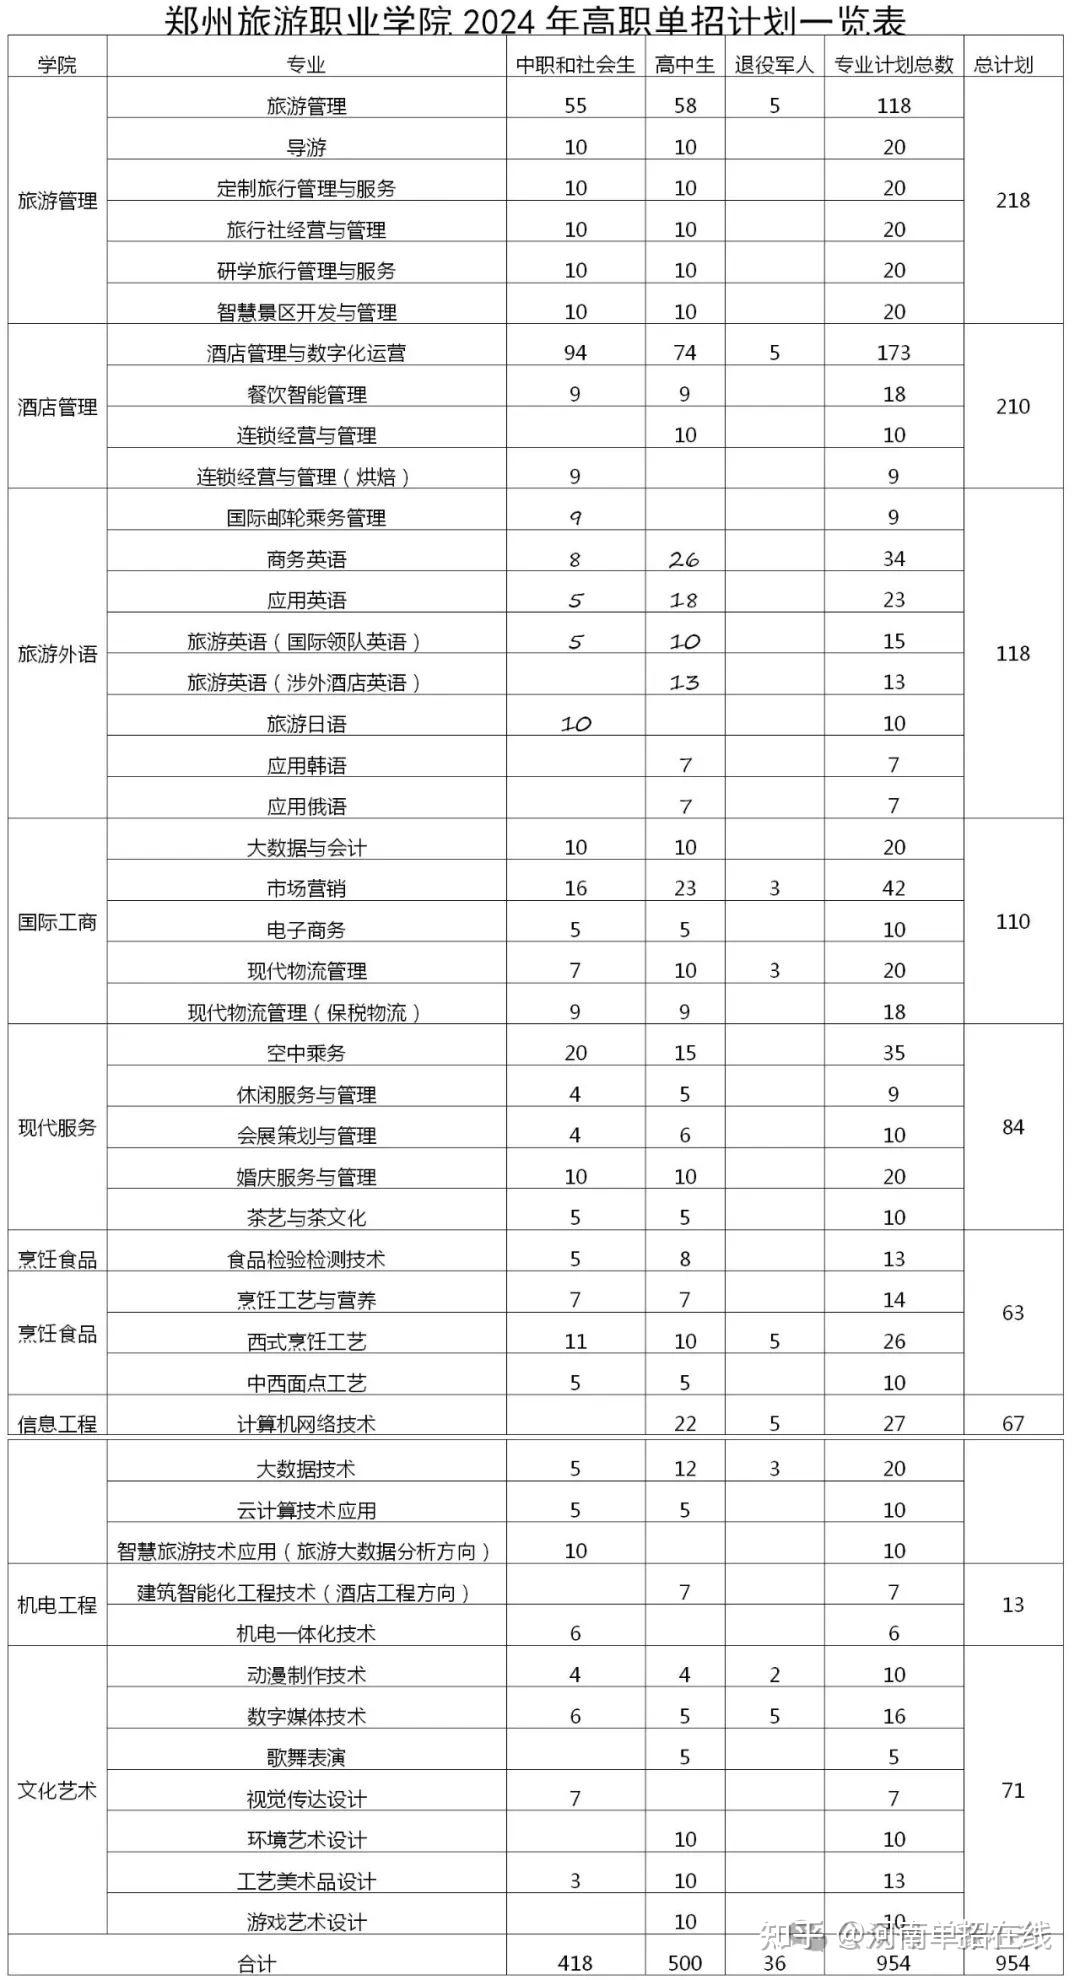 29  郑州旅游职业学院2024单招招生计划28  河南农业职业学院2024单招